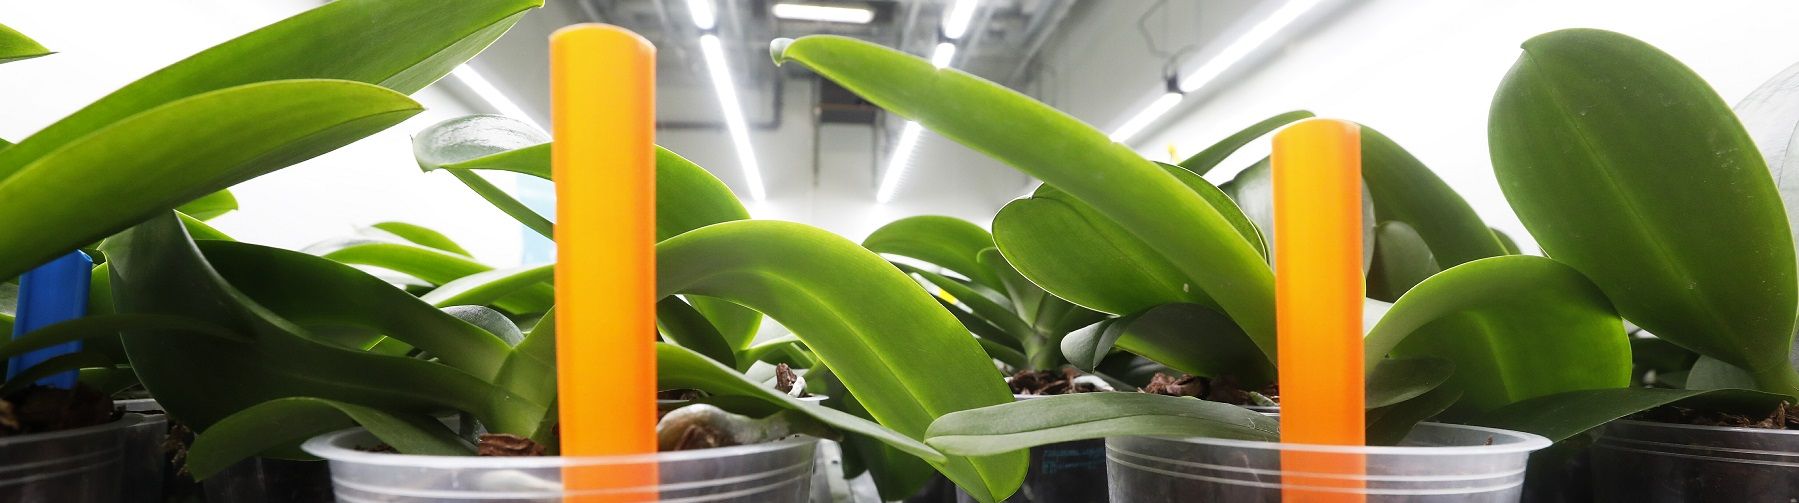 Plant Lighting: jaarrond teeltproeven in klimaatkamers